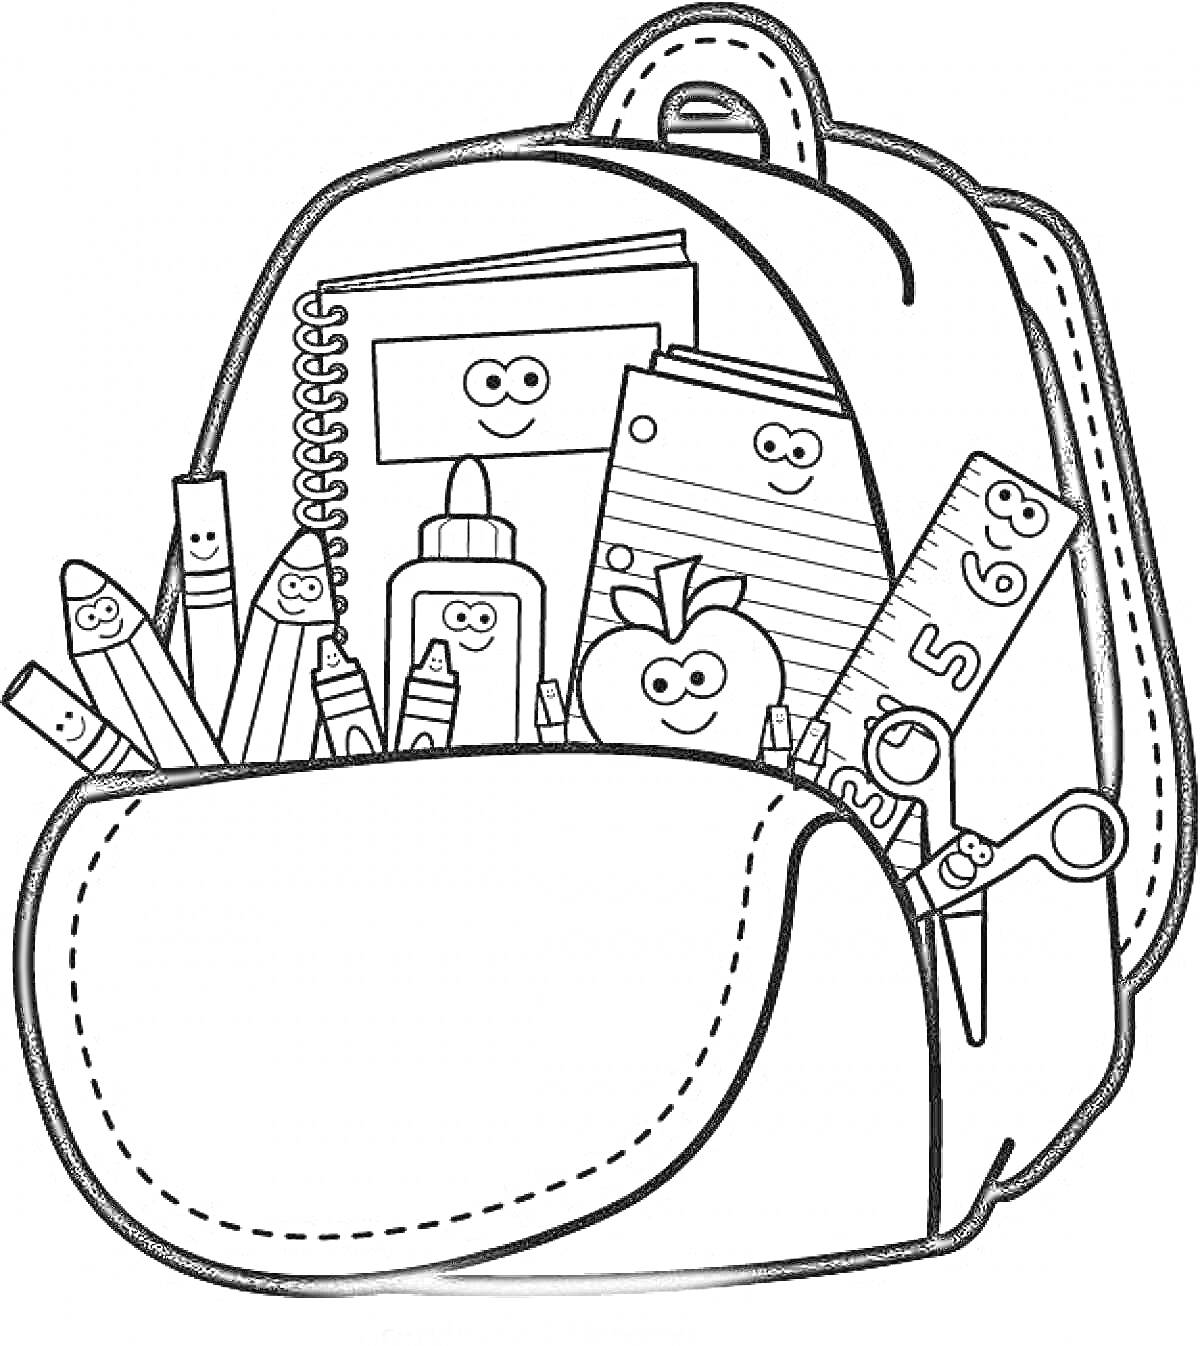 Рюкзак с тетрадями, карандашами, клеем, яблоком, линейкой и ручками